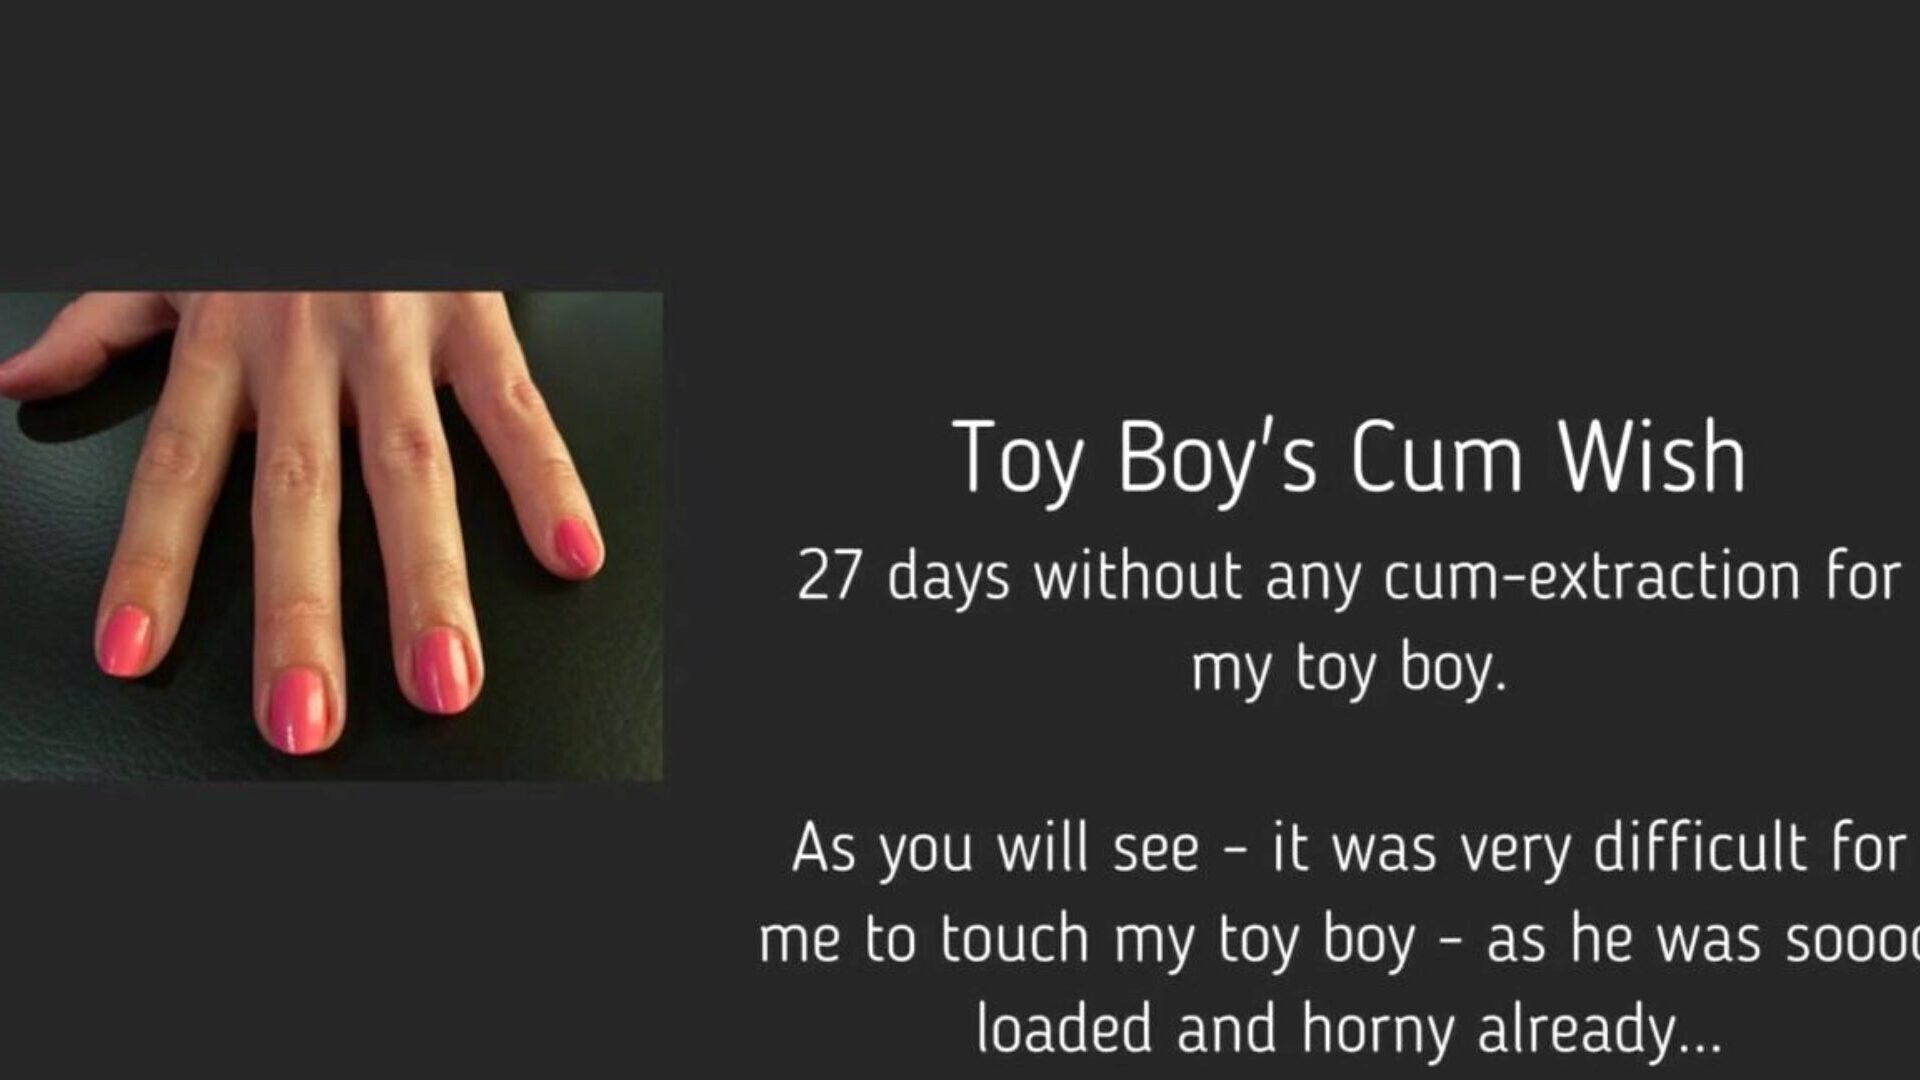 jucărie băiat cum dorință: gratuit femdom handjob hd porno video 95 ceas jucărie băiat cum doresc tub orgie film gratuit pe xhamster, cu cea mai sexy grup de femdom handjob bel ami cum & tube băiat hd porno film scena concerte